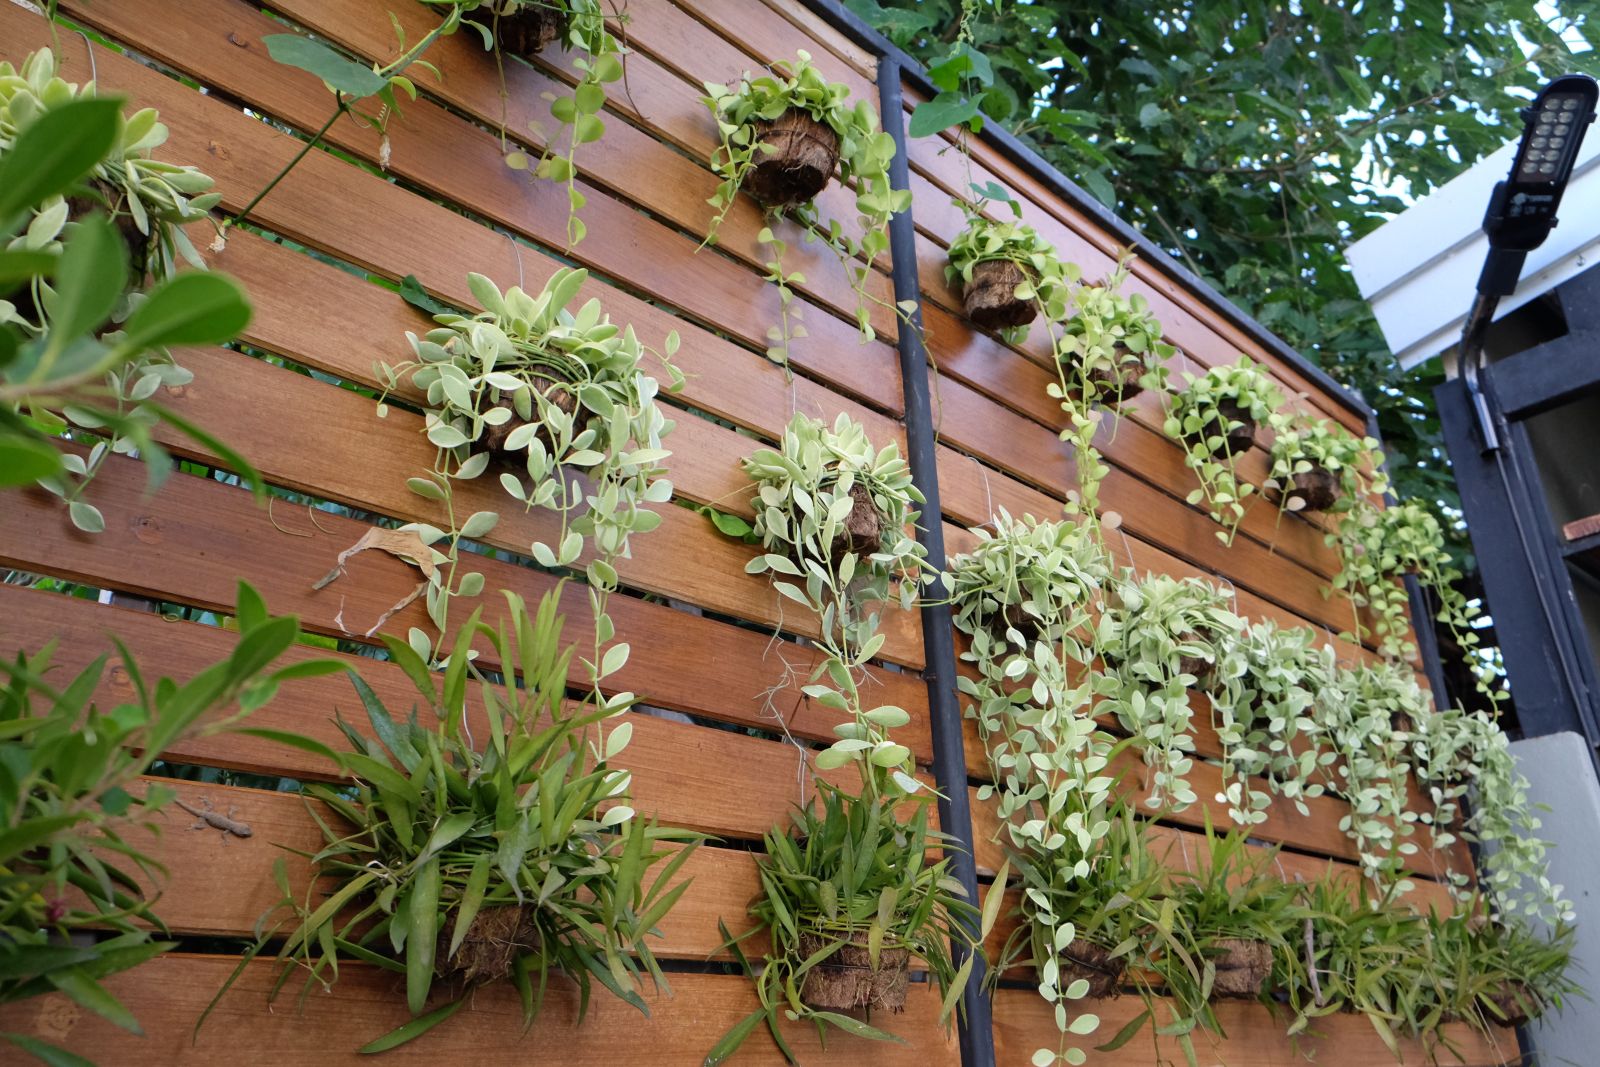 Vertical garden on a wooden wall